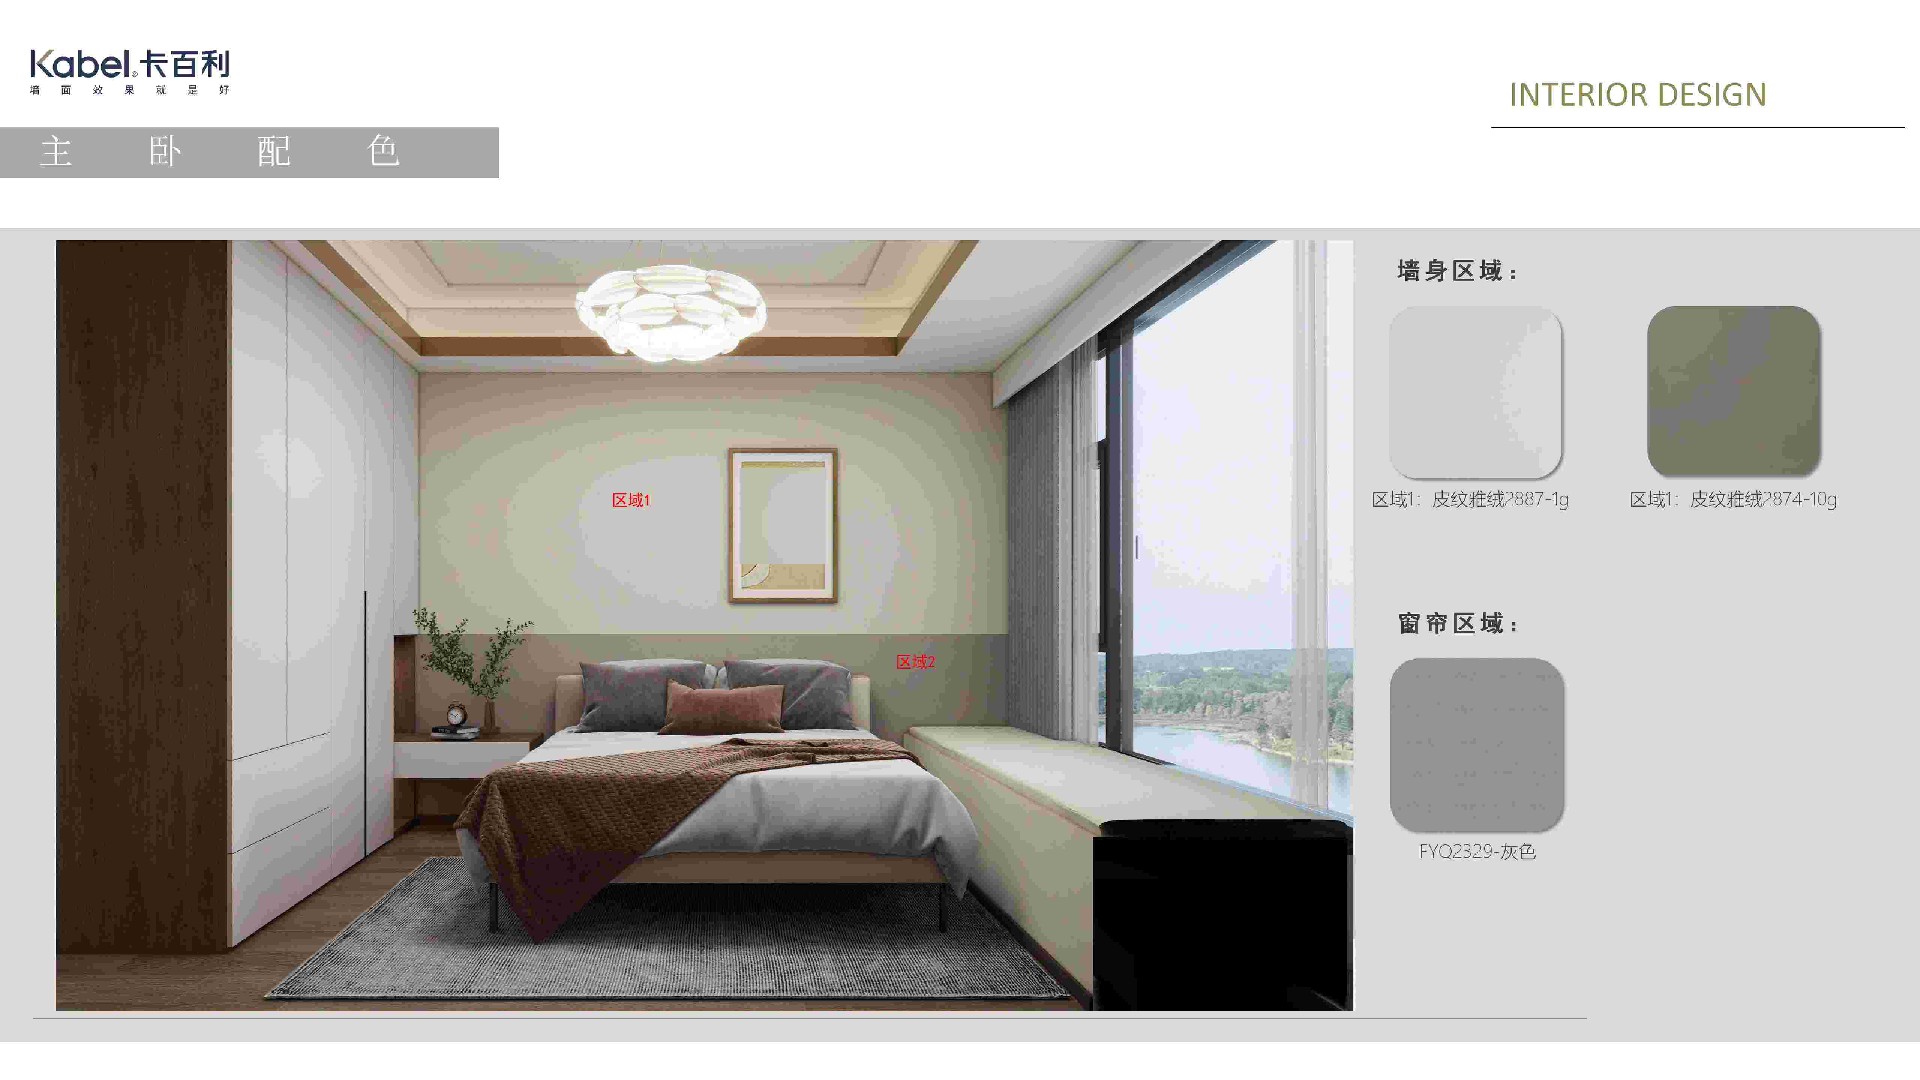 净醛皮纹纯色艺术漆丨原木风丨色调温暖丨简约舒适丨客厅丨卧室